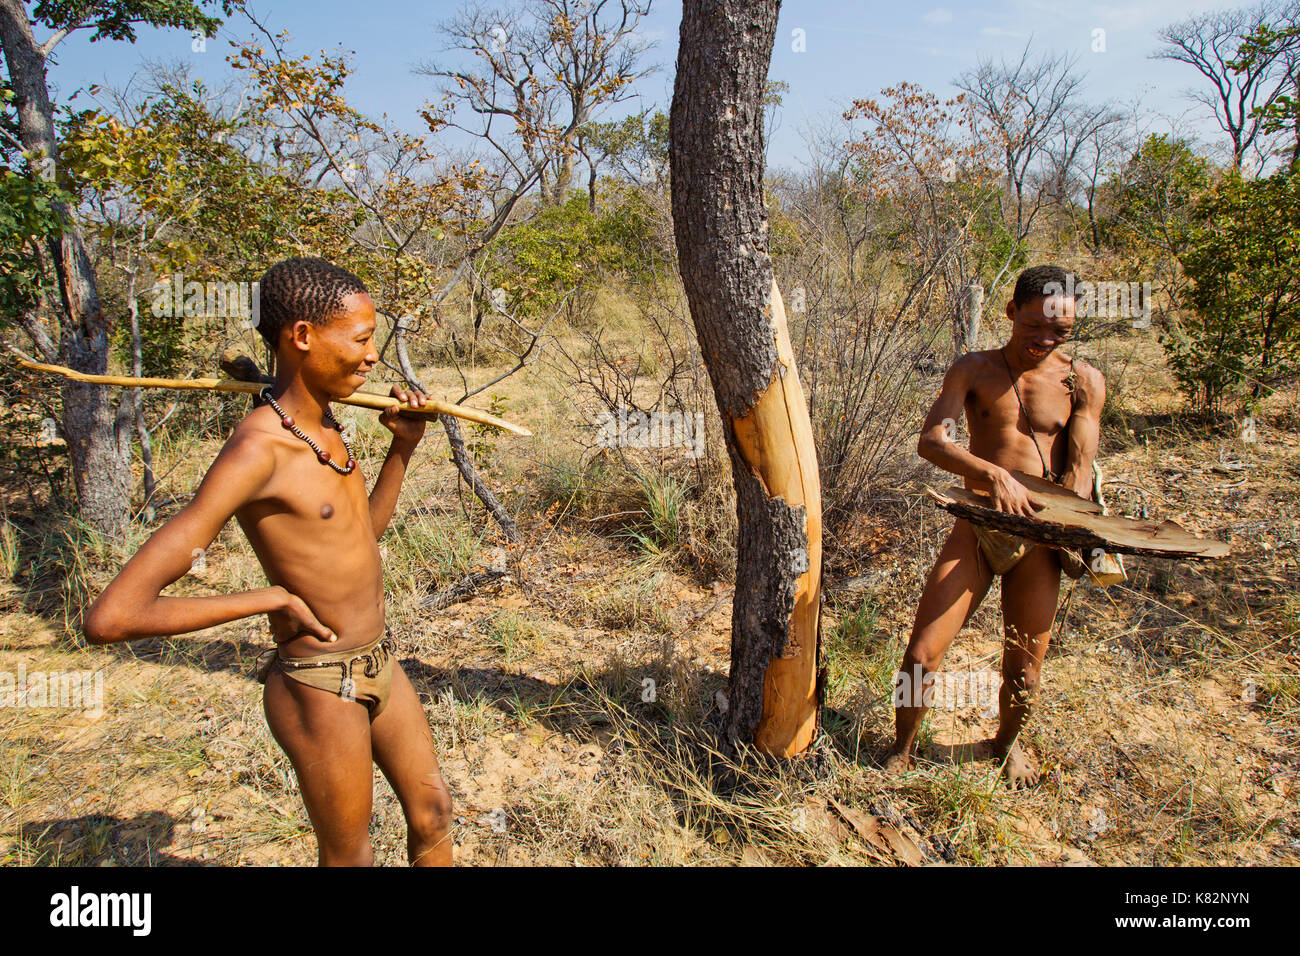 Ju/'hoansi ou San chasseurs bushmen dans la brousse près de leur village, Grashoek. Ils sont membres de plusieurs peuples peuple de chasseurs-cueilleurs, la Namibie Banque D'Images